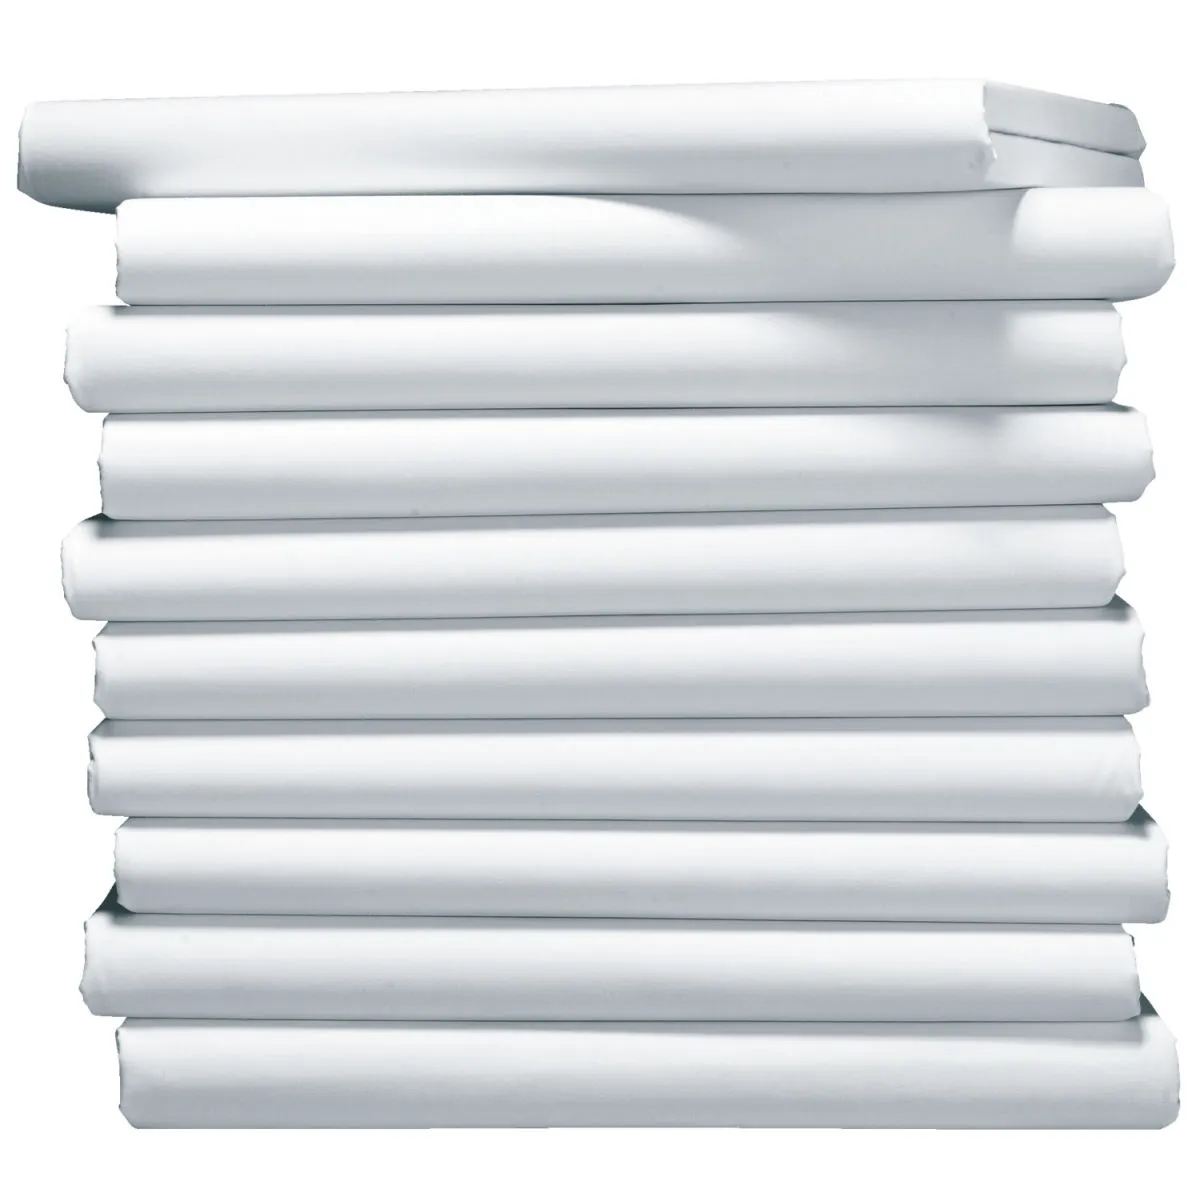 Lenzuola con elastici Portland jersey ; 90-100x200 cm (LxL); bianco; 10 pz. / confezione